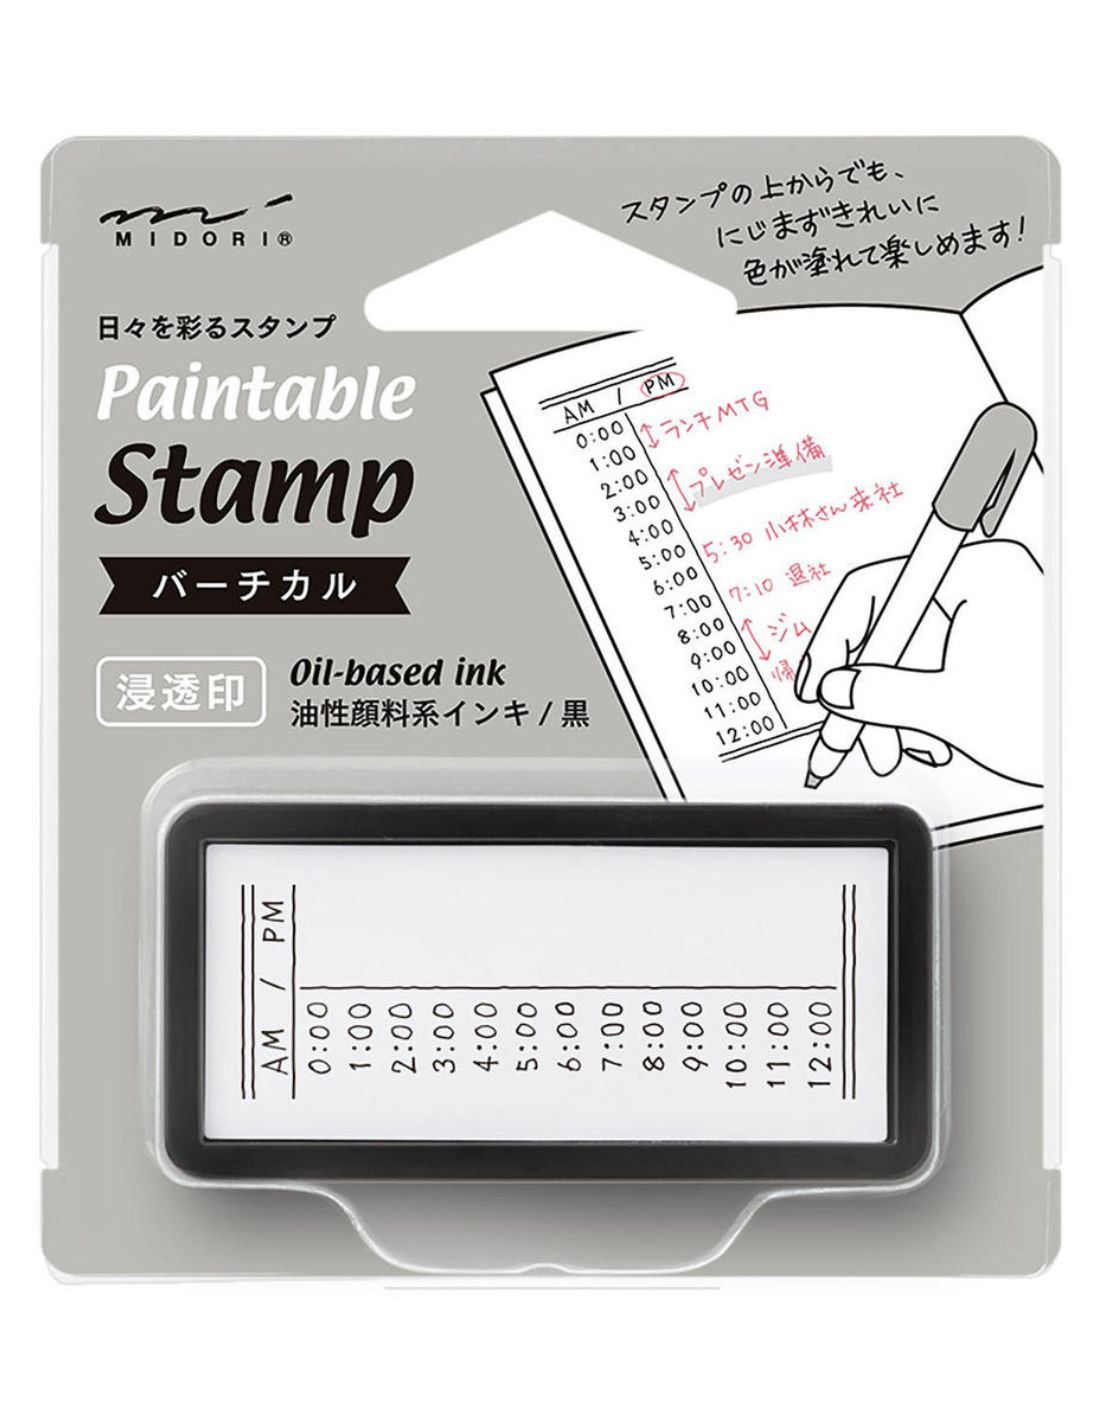 Tampon pré-encré Paintable Stamp - Planning vertical - Midori